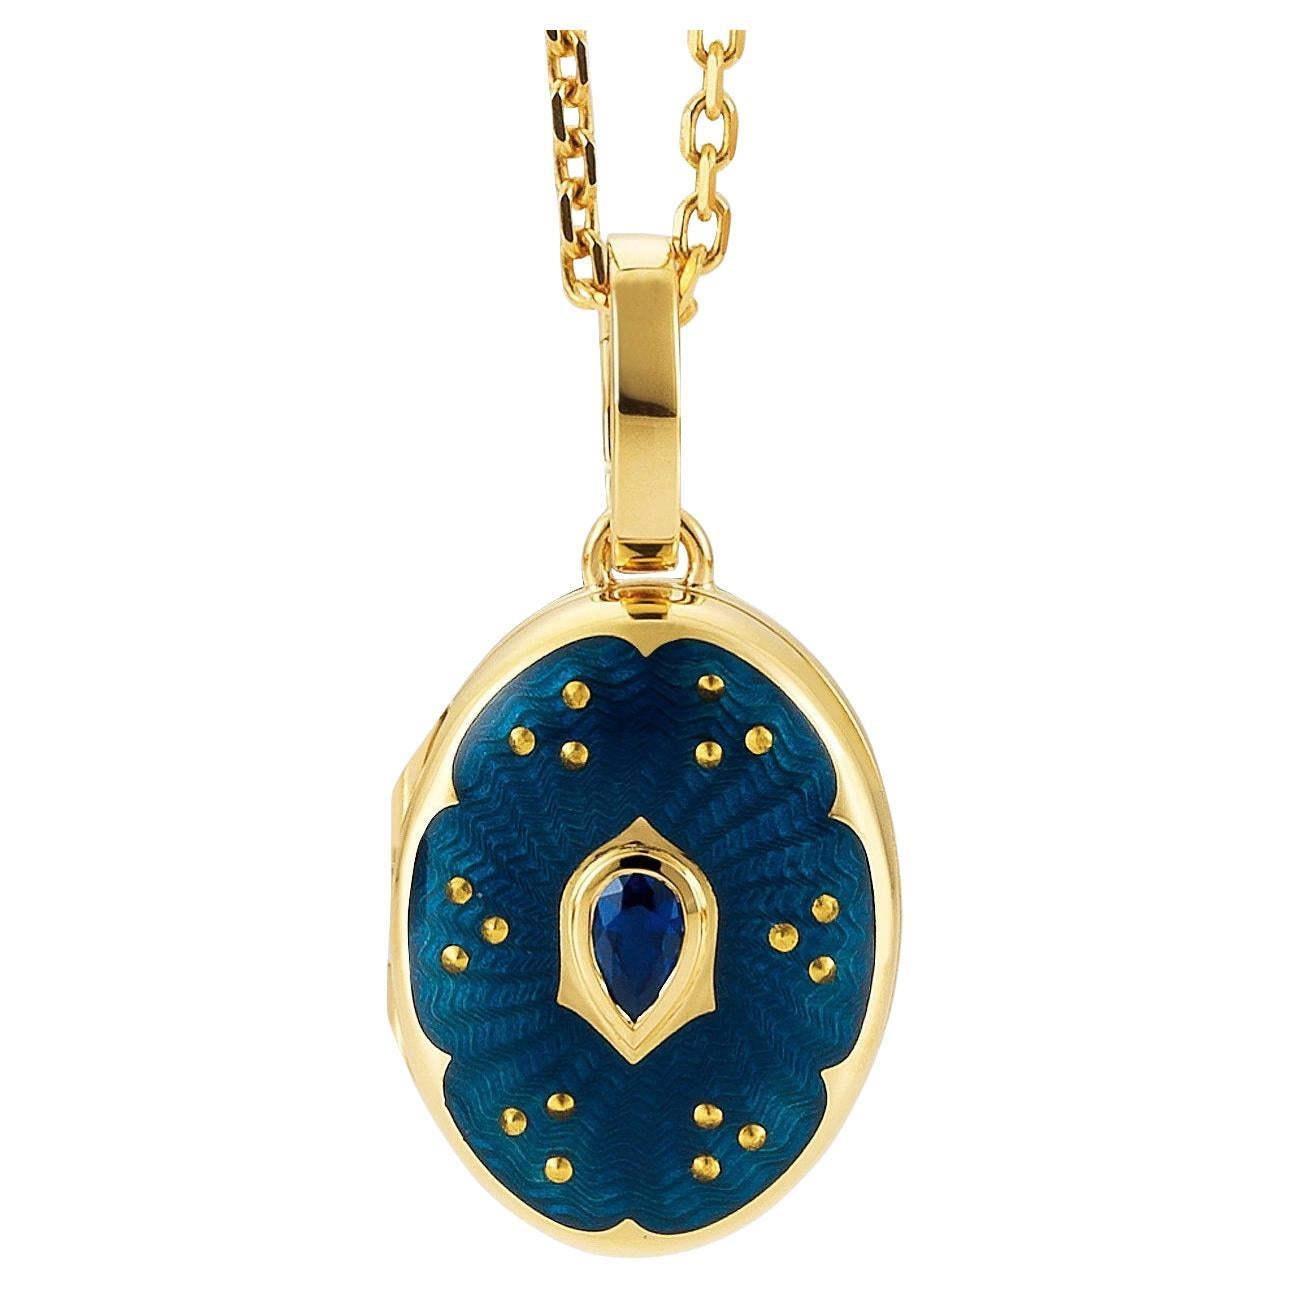  Collier pendentif médaillon ovale en or jaune 18 carats, émail bleu et 1 saphir